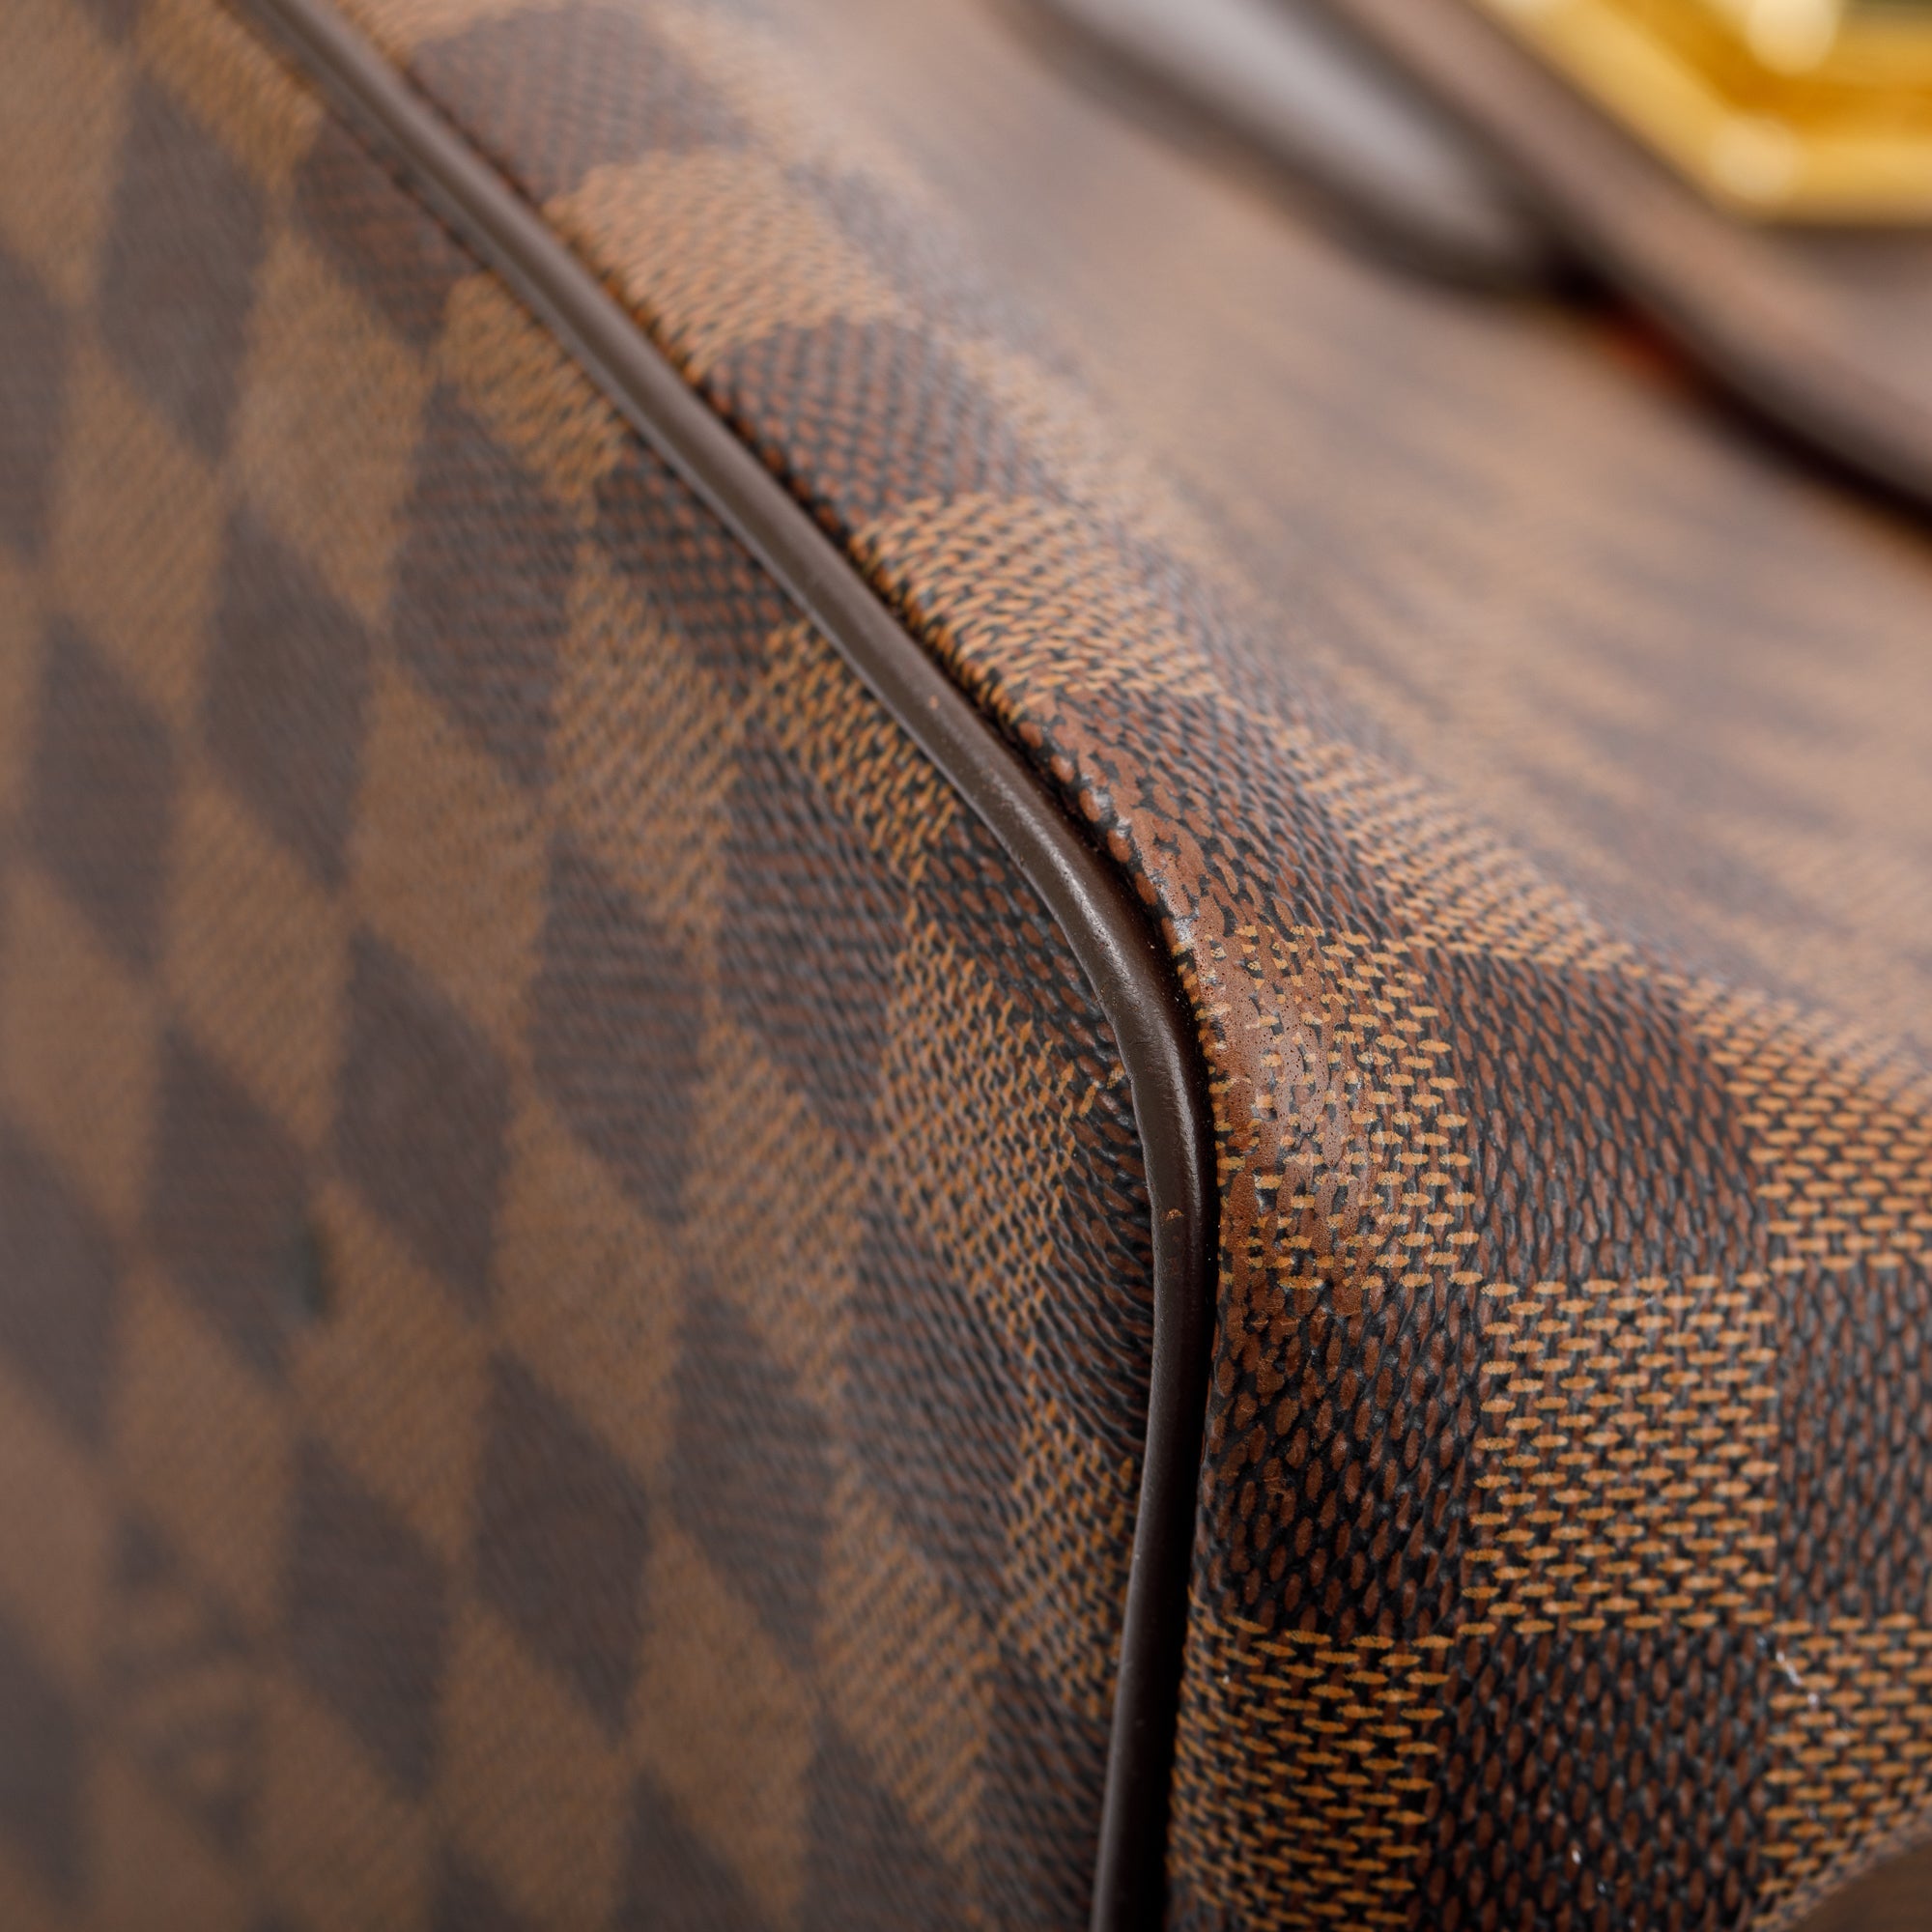 Louis Vuitton Damier Ebene Bergamo GM bag - ShopperBoard